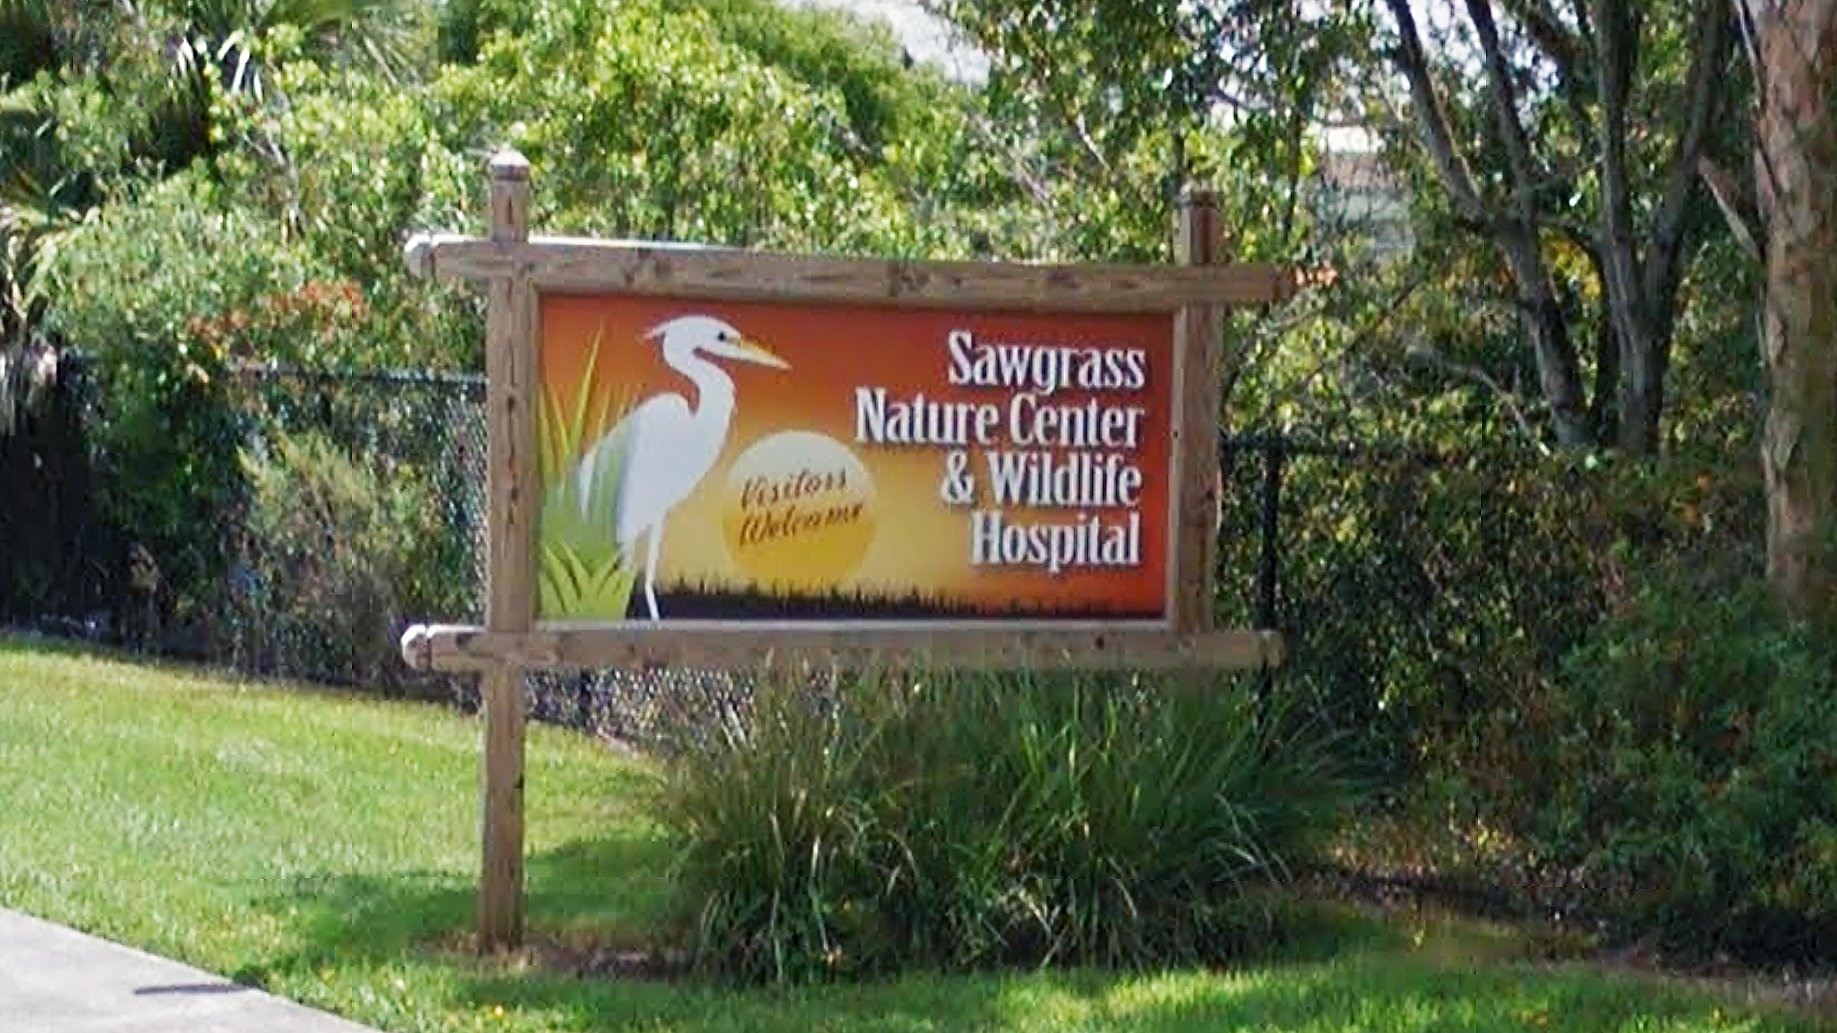 Sawgrass Nature Center